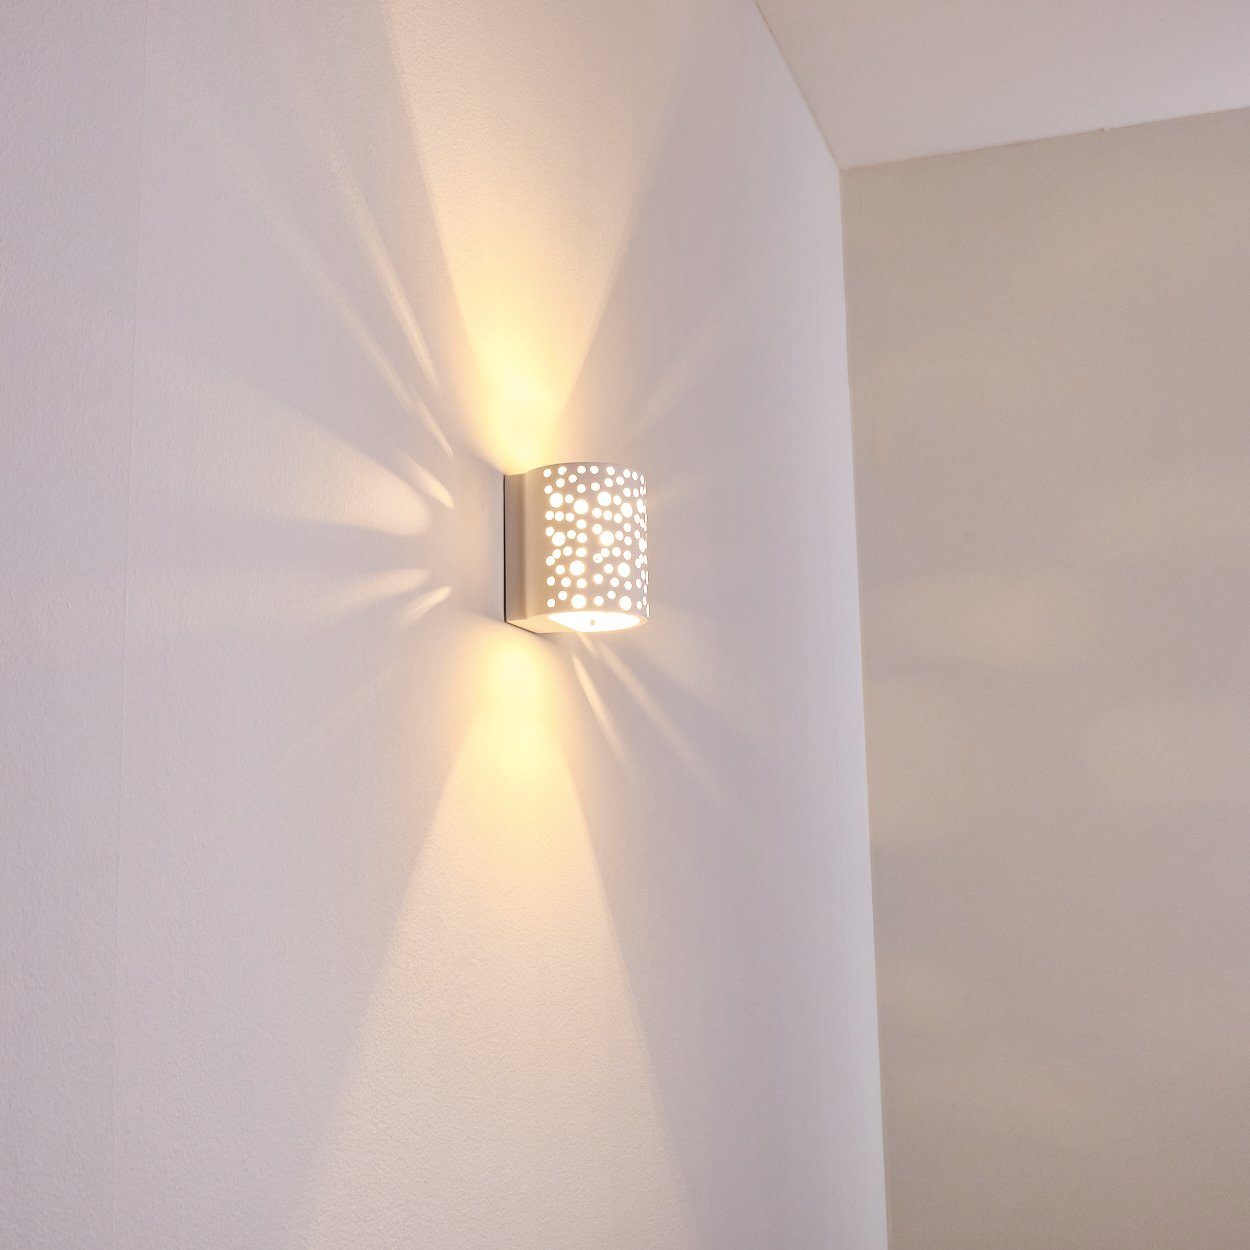 Keramik ist mit diese Wandlampe ohne weiß, Farben Leuchtmittel, aus Wandlampe Lichteffekt, »Cuvara« Lampe Wandleuchte bemalbar hofstein